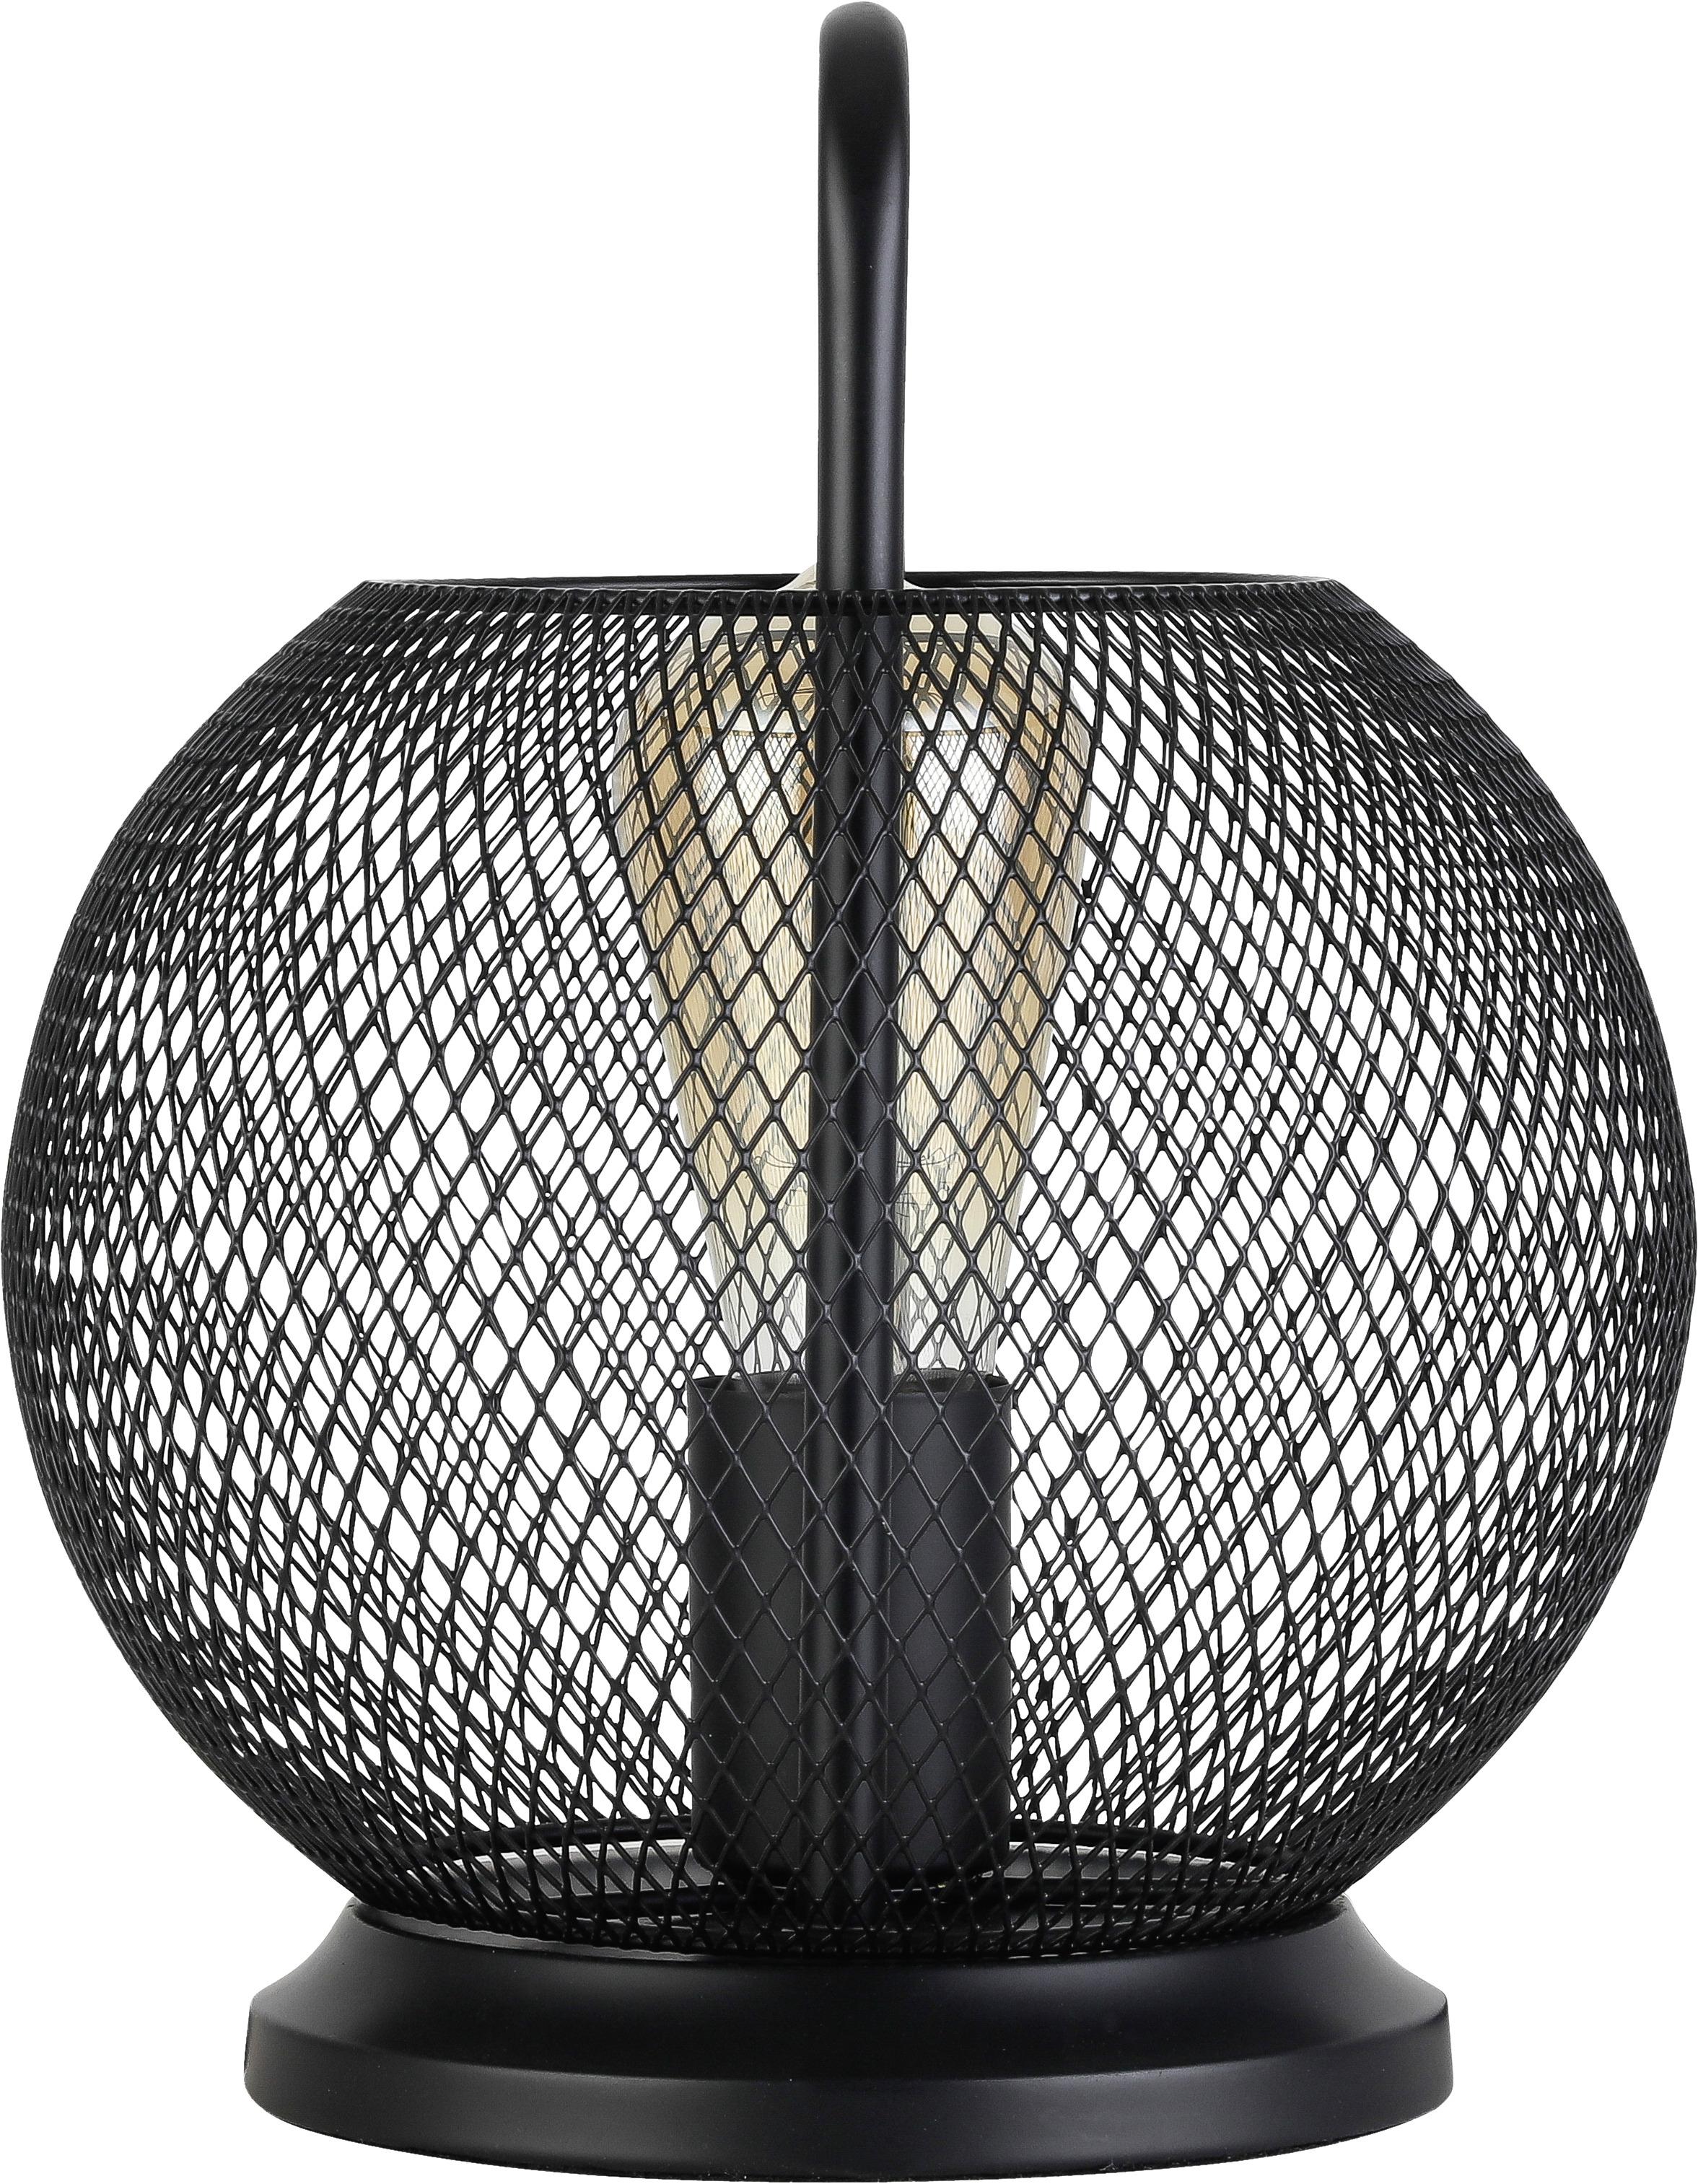 Namizna Svetilka Liljana, Črna, 40 W - črna, Moderno, kovina (22/28cm) - Modern Living